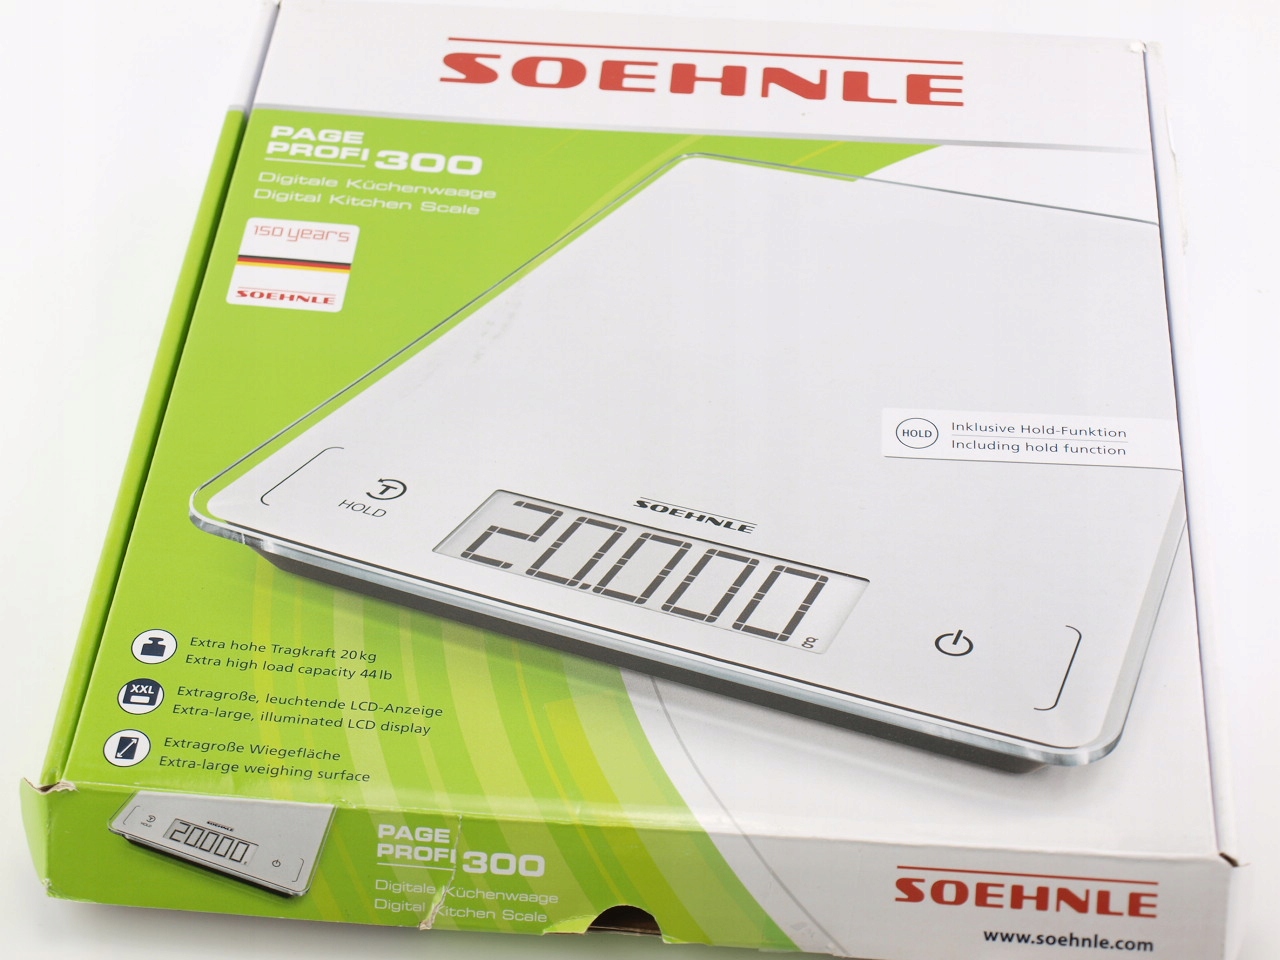 Page Profi 300 Electronic kitchen scales - Soehnle 61507